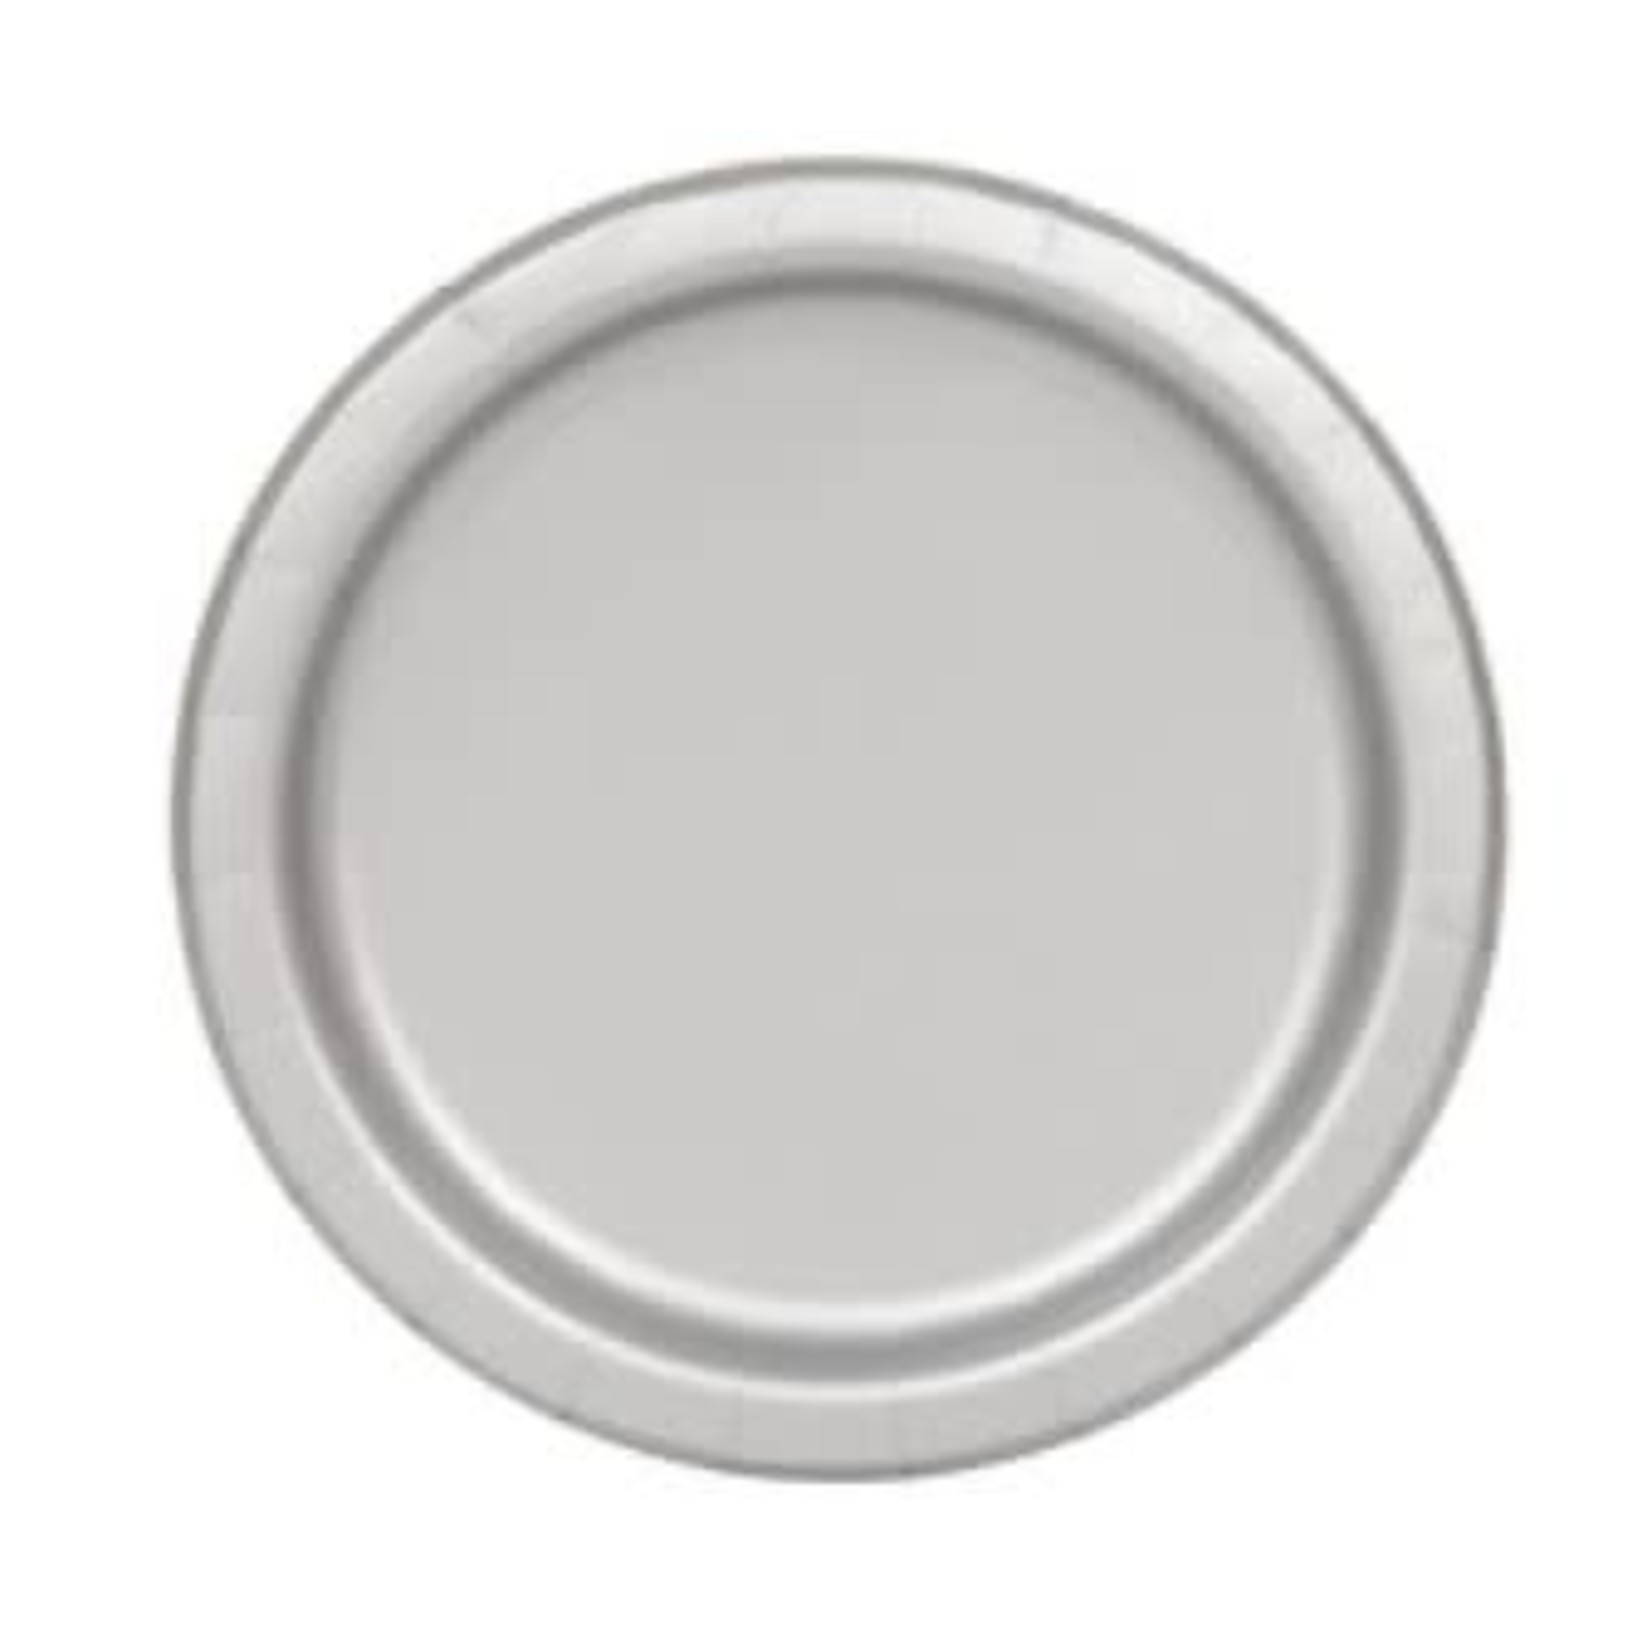 Silver Solid Round 7" Dessert Plates  20ct